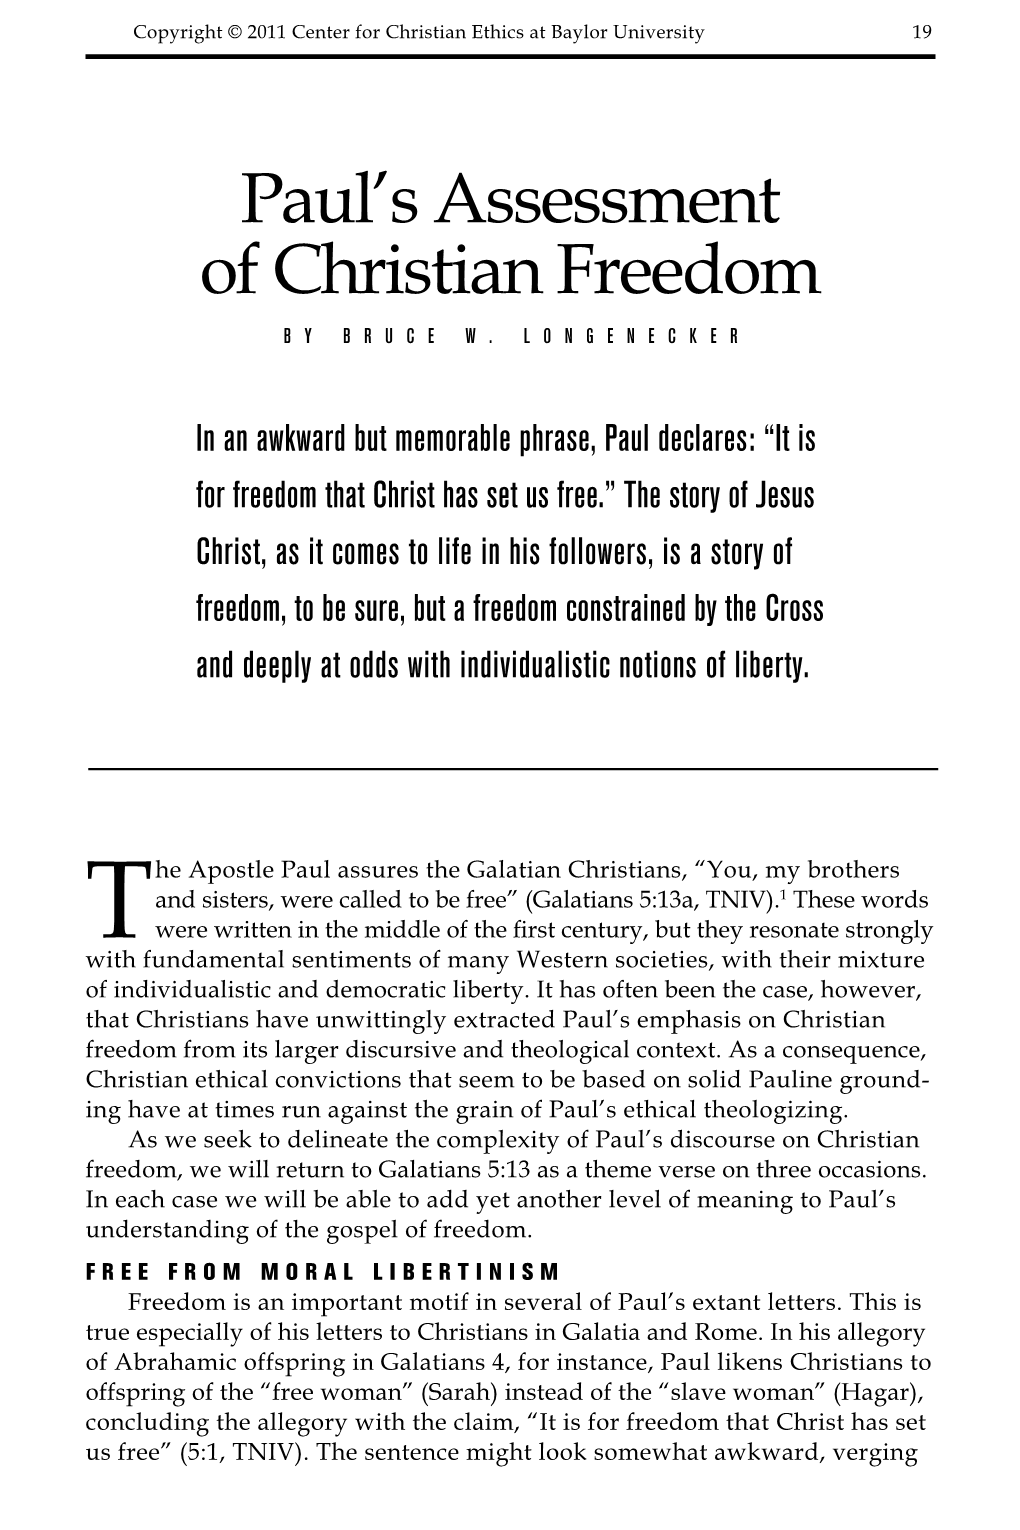 Paul's Assessment of Christian Freedom